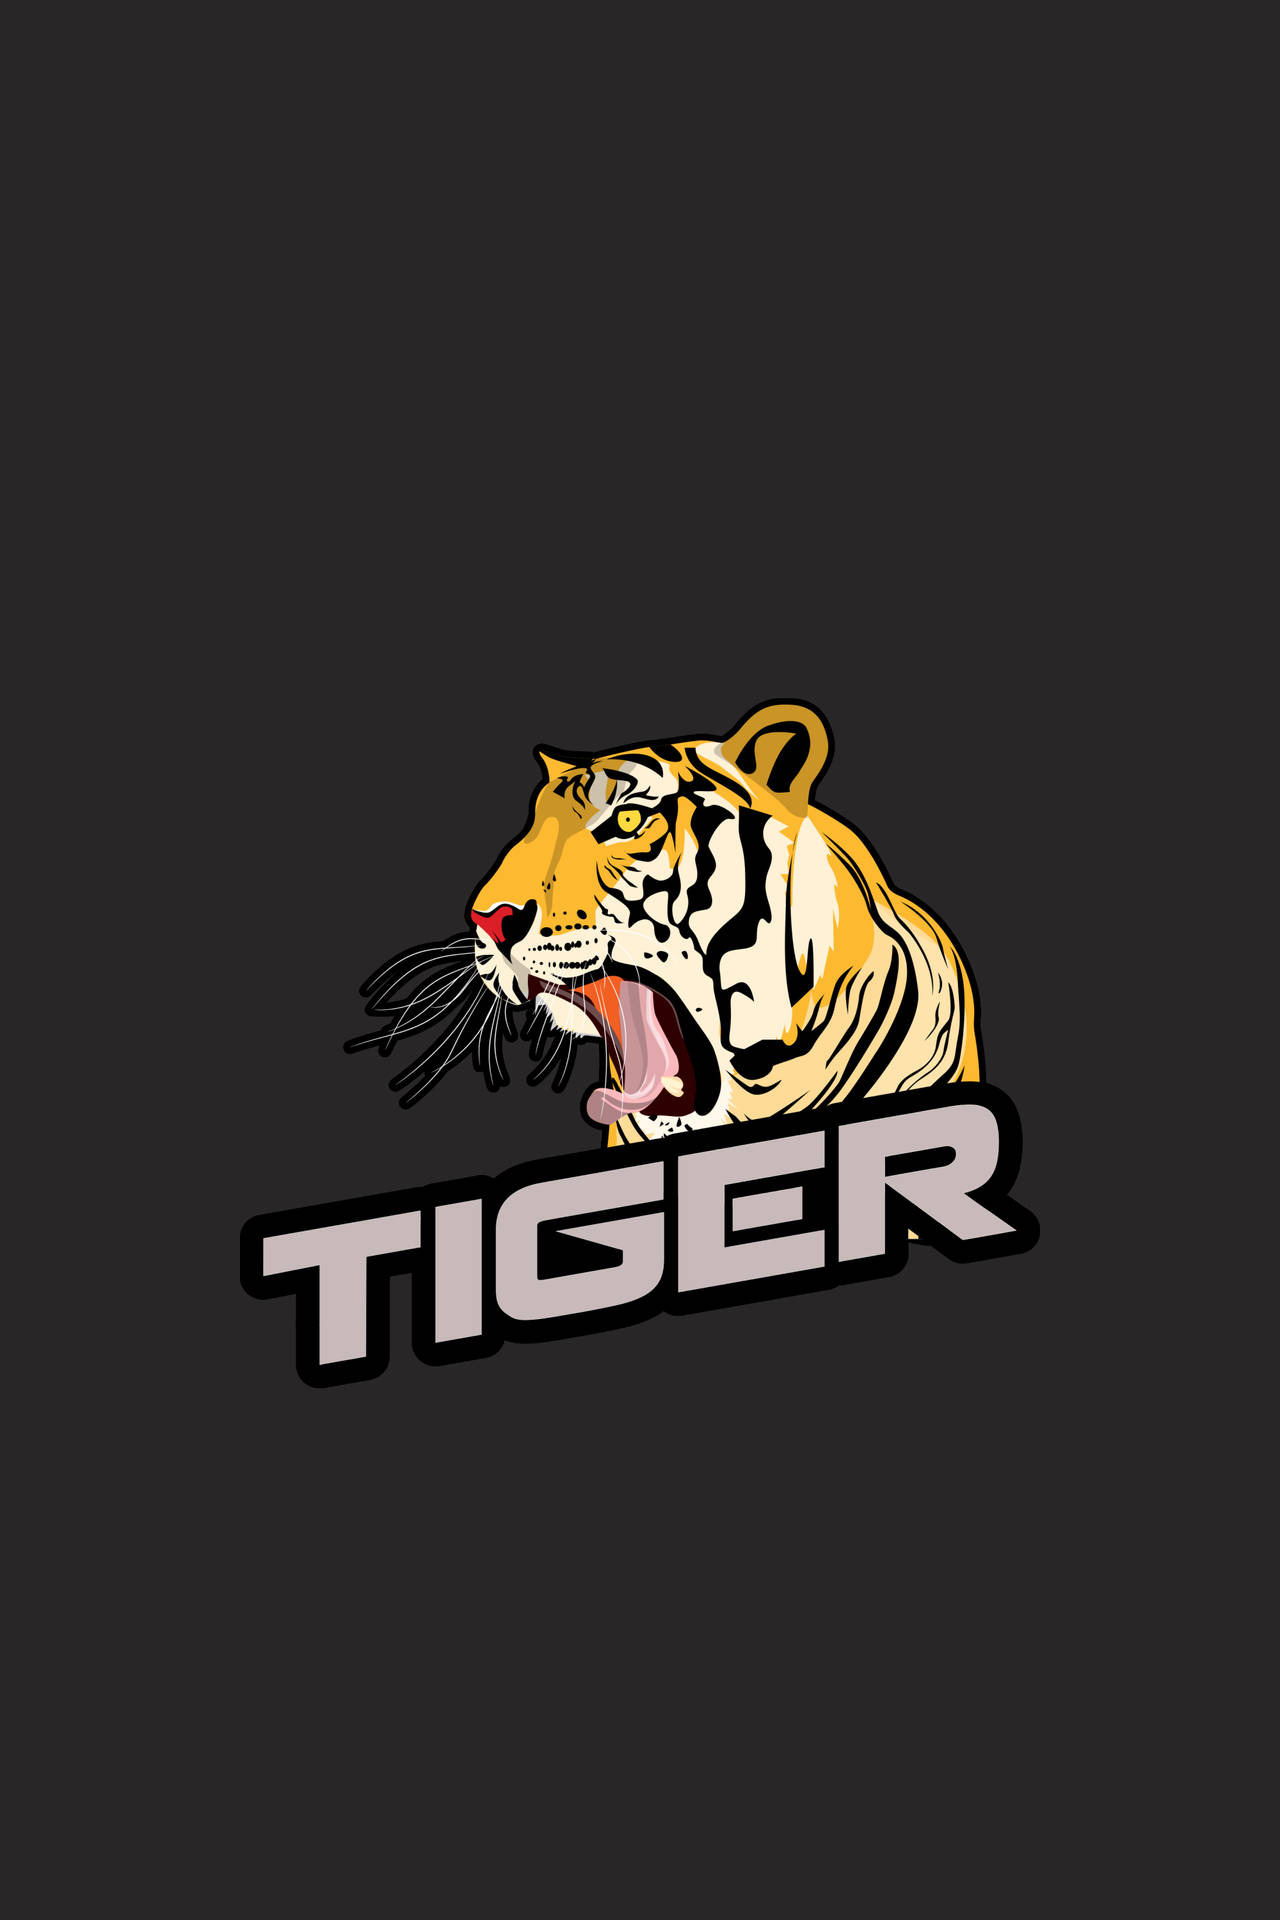 Roaring Tiger Illustration Wallpaper